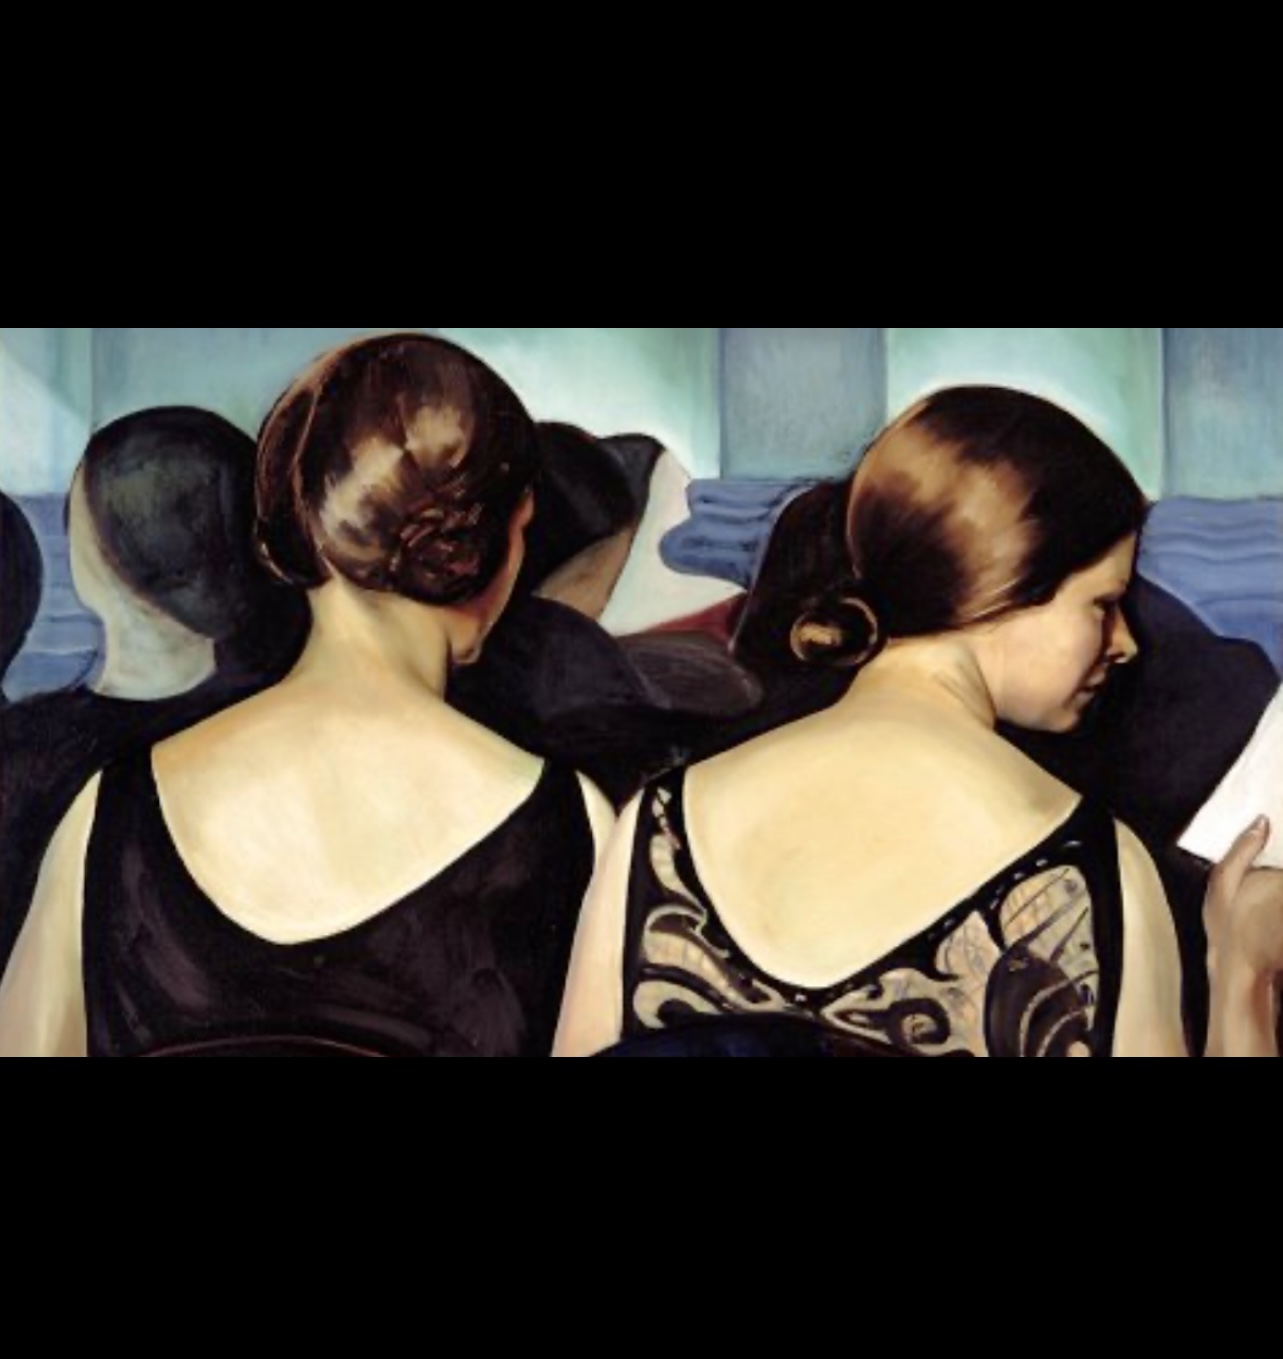 Les peintres de la côte du Beaver Hall – les femmes d’abord est un tableau captivant mettant en scène deux femmes élégamment assises en rangée.